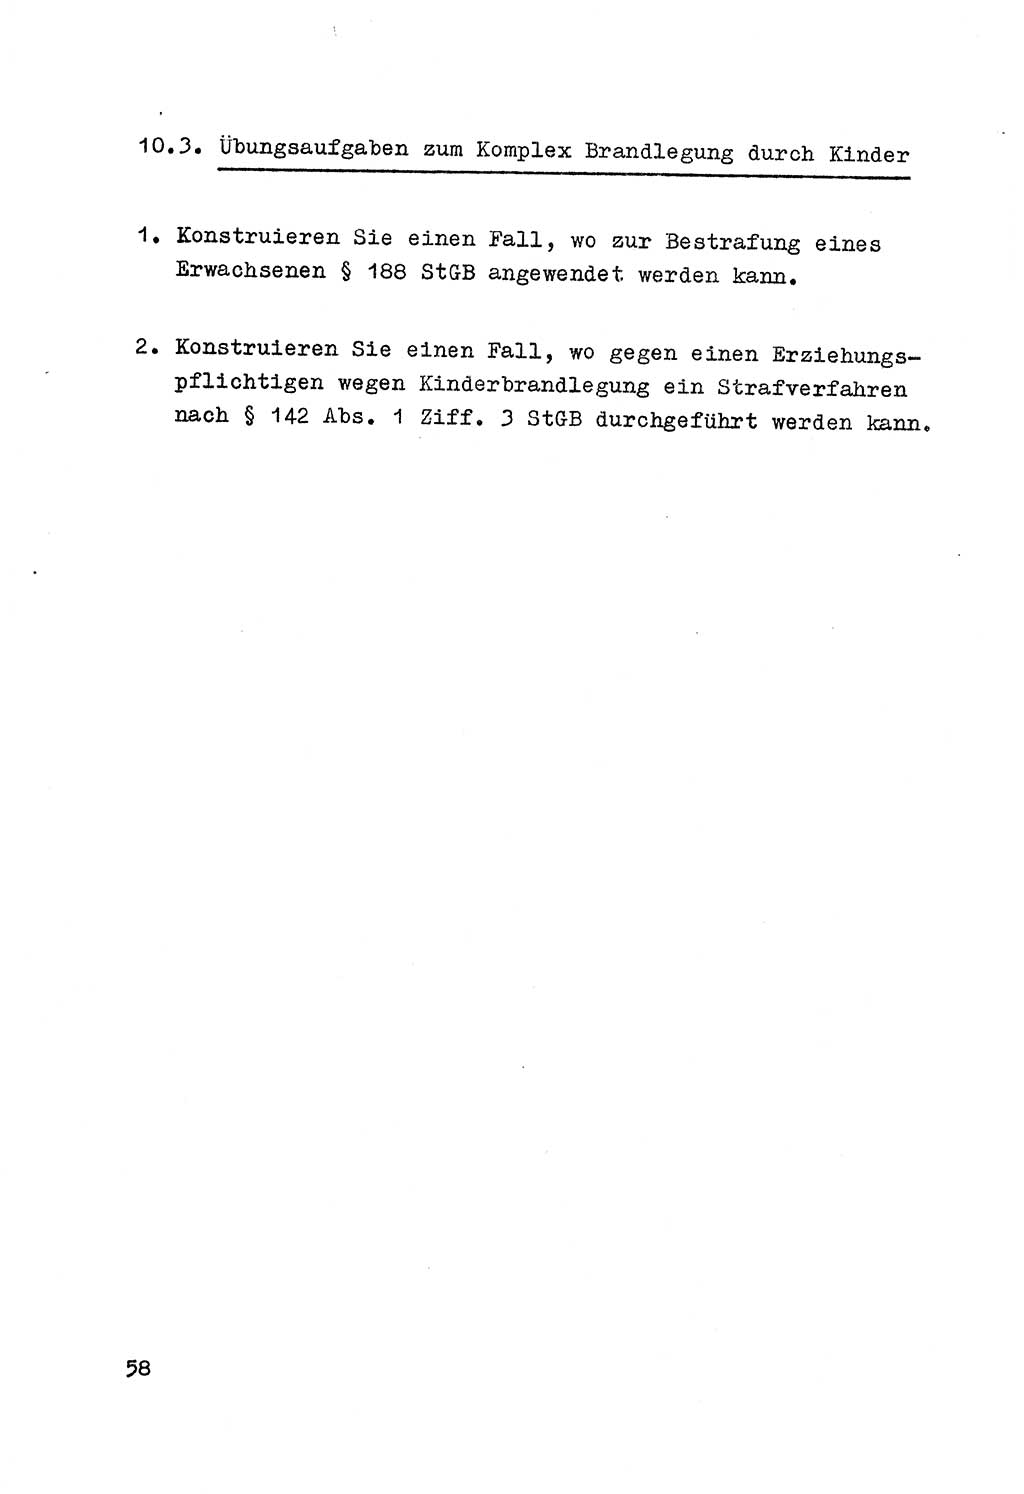 Strafrecht der DDR (Deutsche Demokratische Republik), Besonderer Teil, Lehrmaterial, Heft 7 1970, Seite 58 (Strafr. DDR BT Lehrmat. H. 7 1970, S. 58)